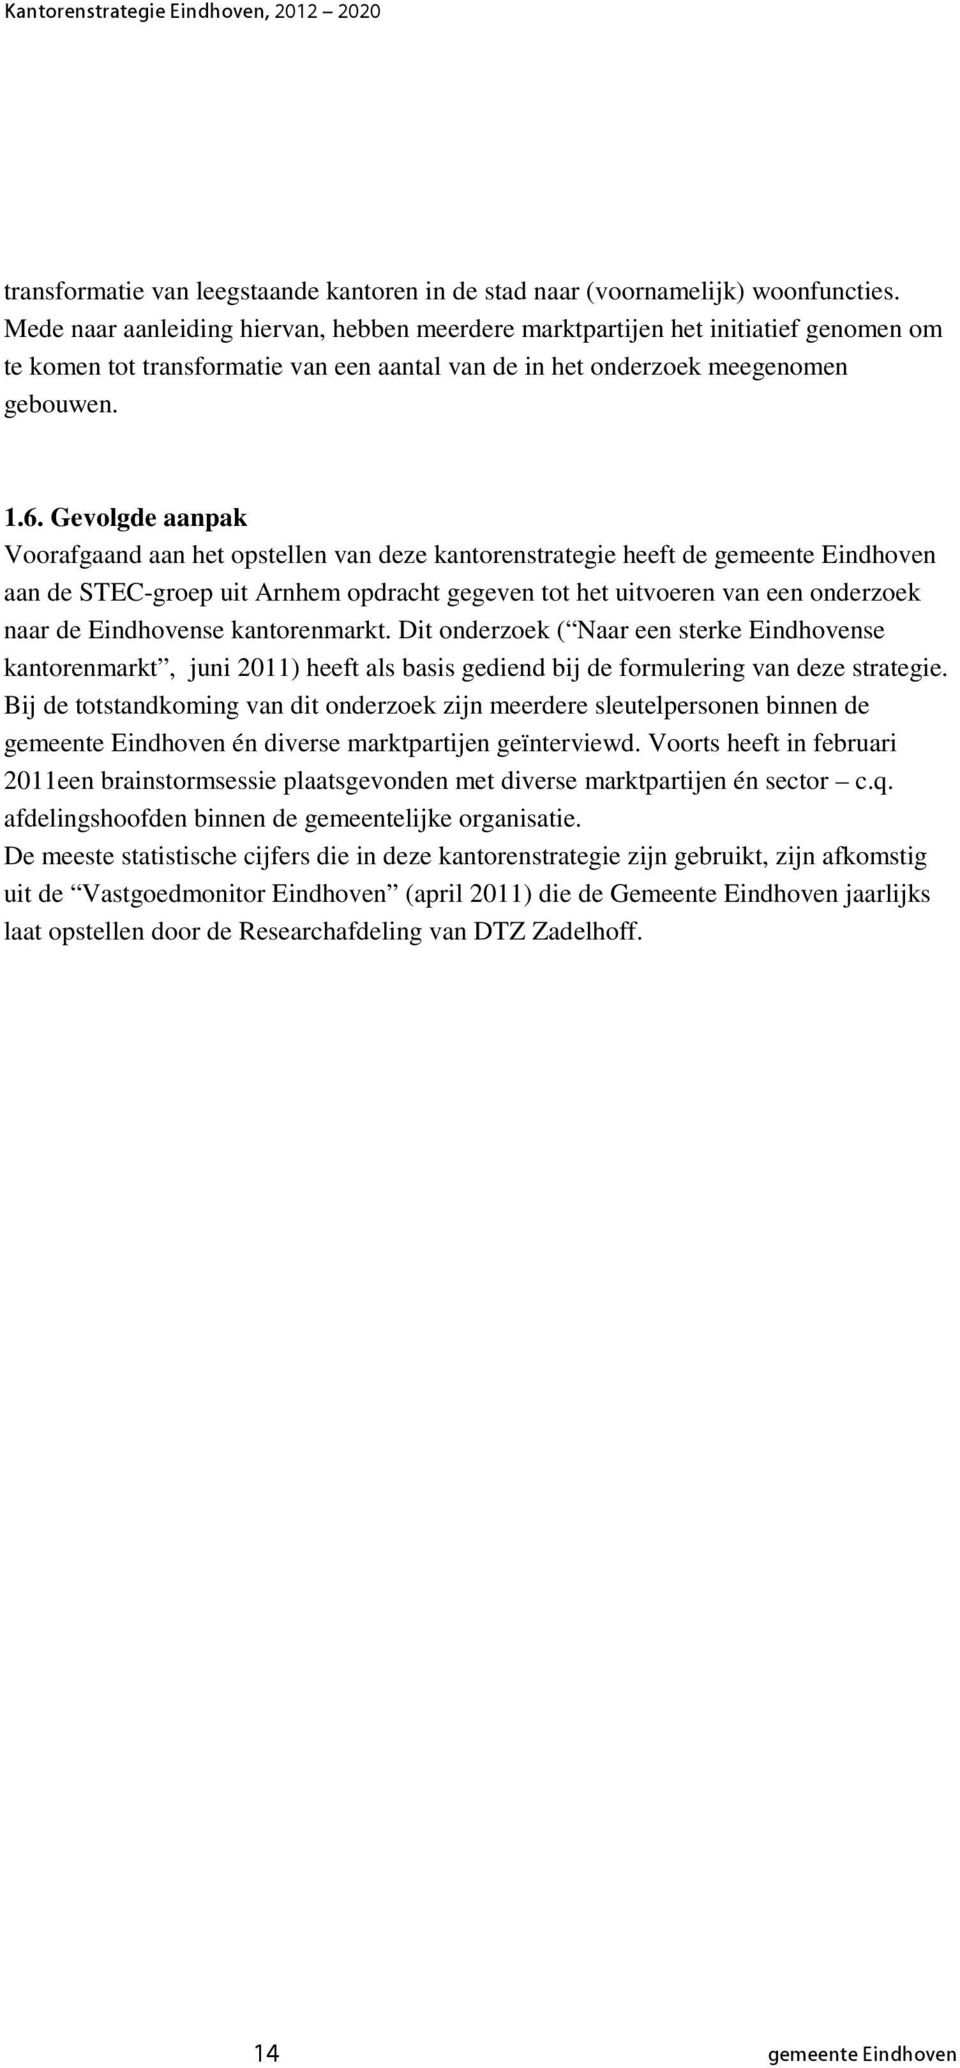 Gevolgde aanpak Voorafgaand aan het opstellen van deze kantorenstrategie heeft de gemeente Eindhoven aan de STEC-groep uit Arnhem opdracht gegeven tot het uitvoeren van een onderzoek naar de